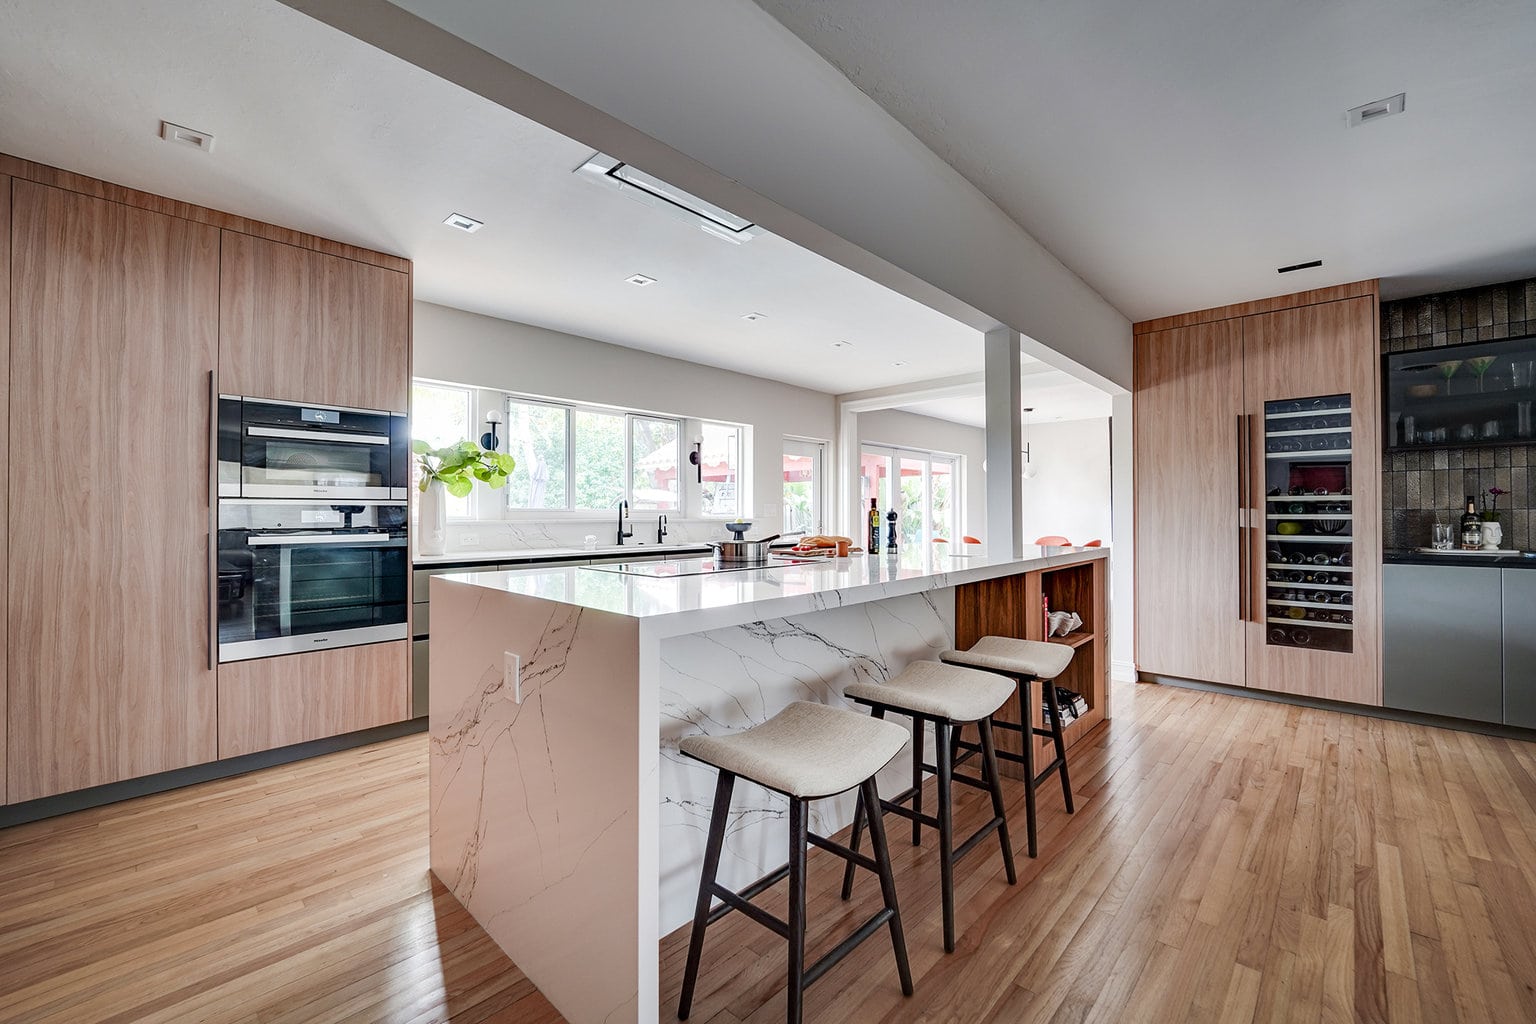 Island & bar area view in modern luxury kitchen by STUDIO 818 interior design & build management